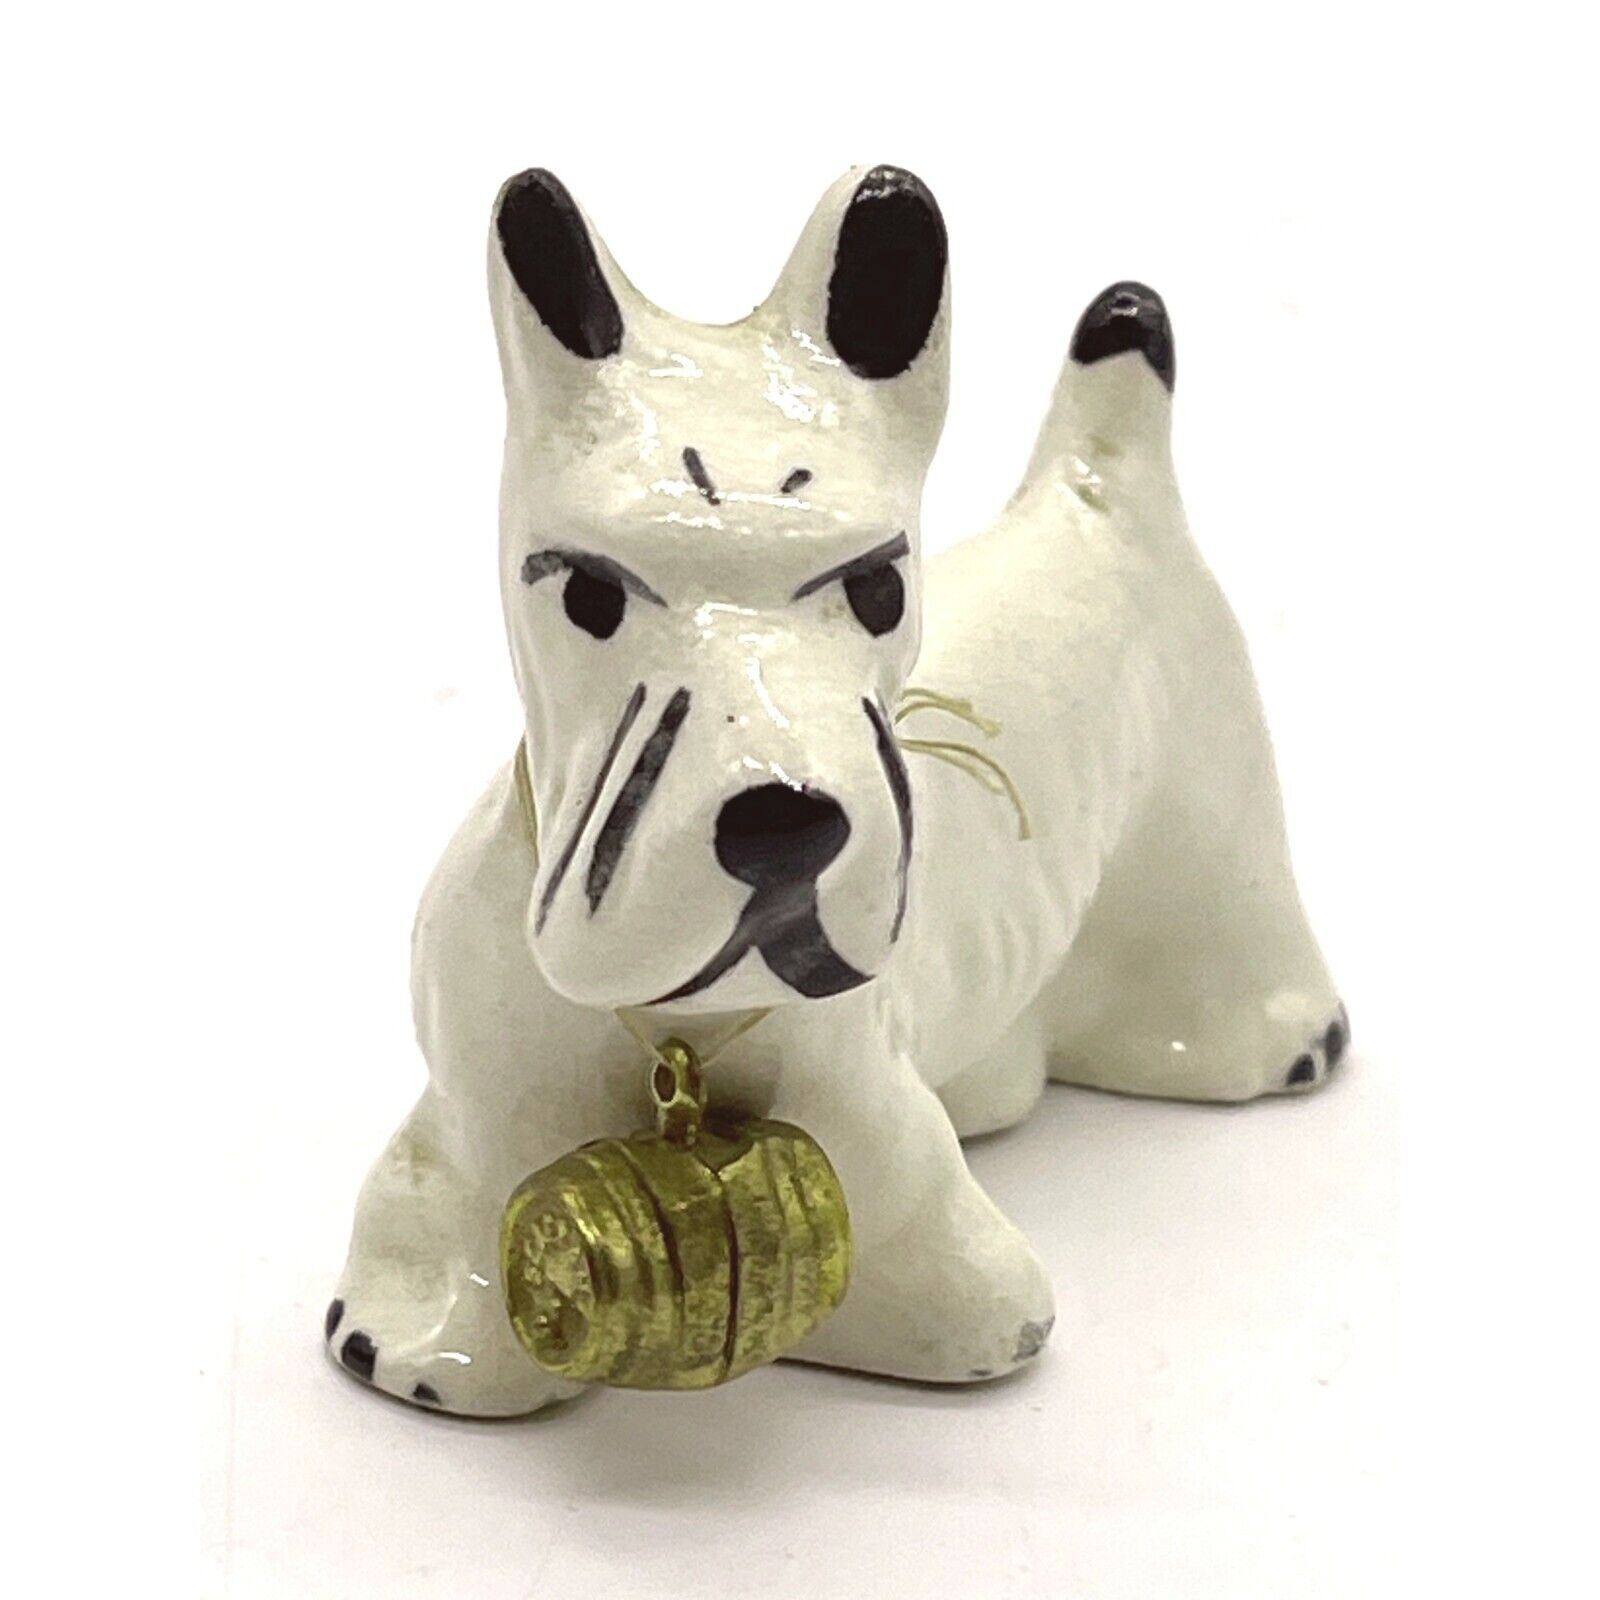 Vintage White Westie Highland Terrier Dog Figurine with Barrel